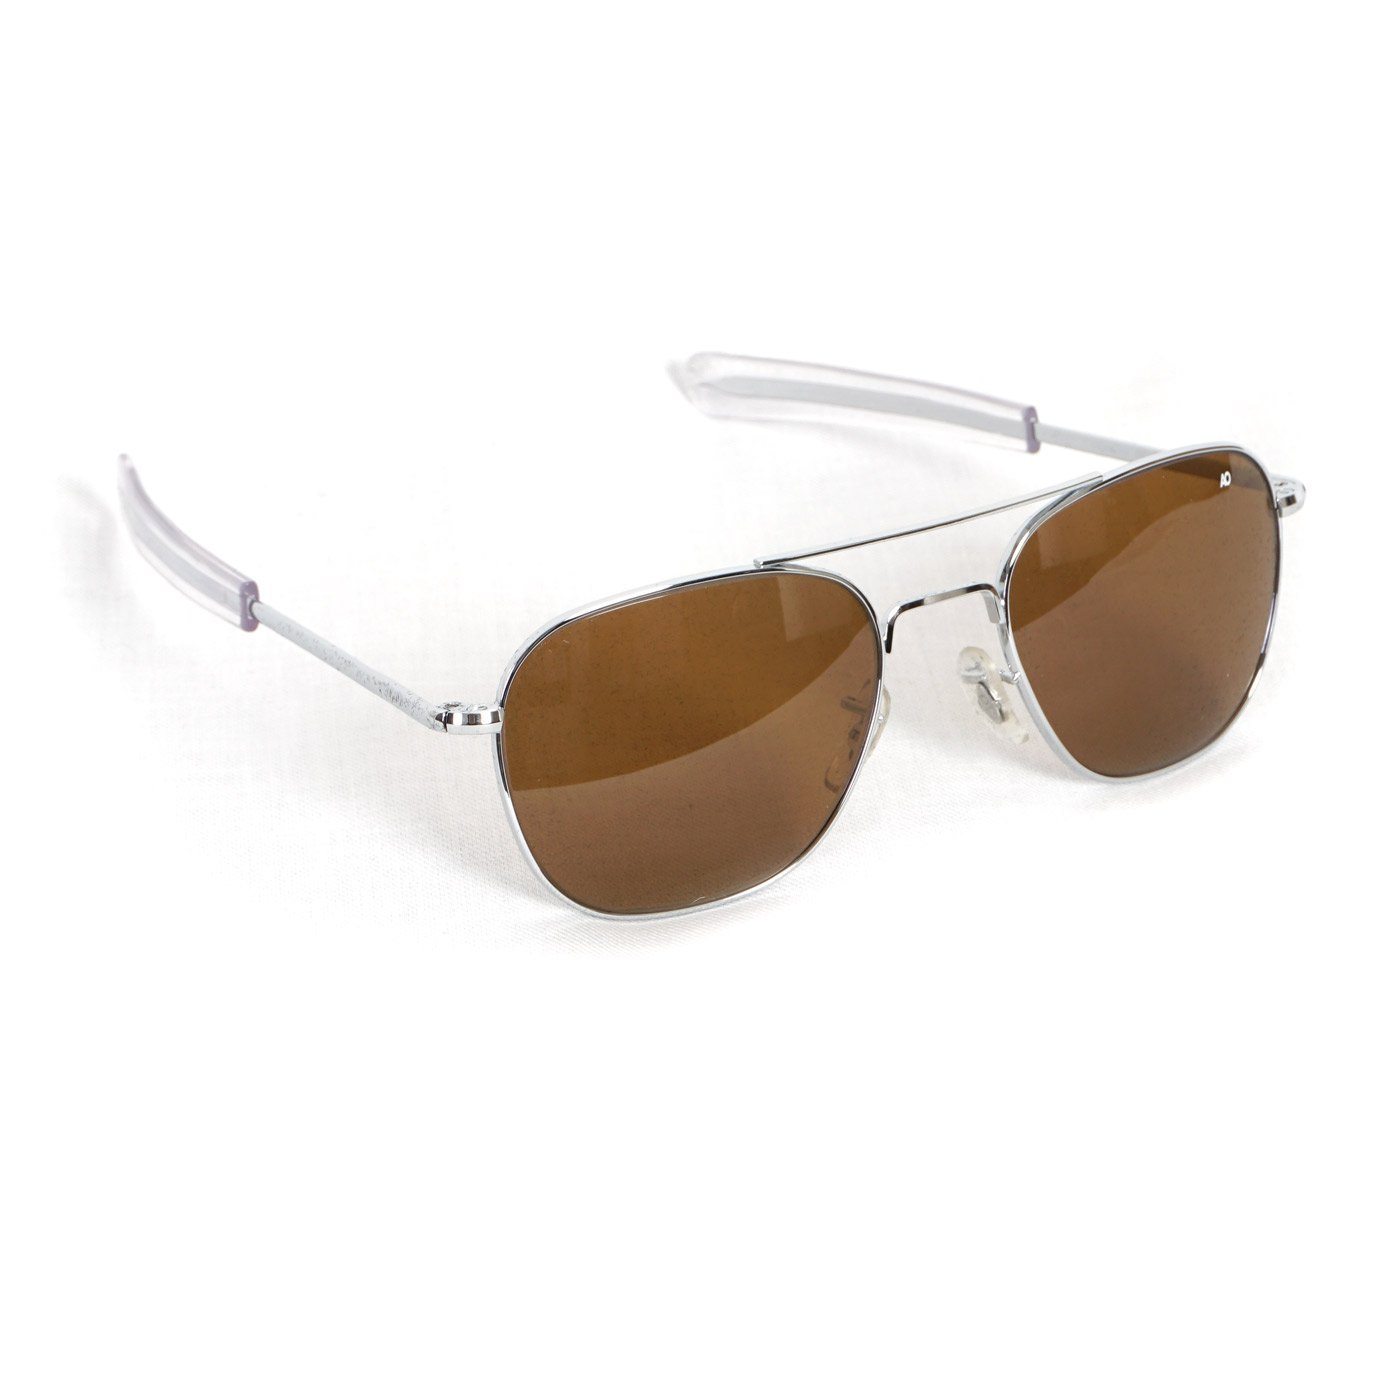 ACCESSORIES - AO EYEWEAR | Original Pilot Sunglasses I Silver Brown - HANSEN Garments